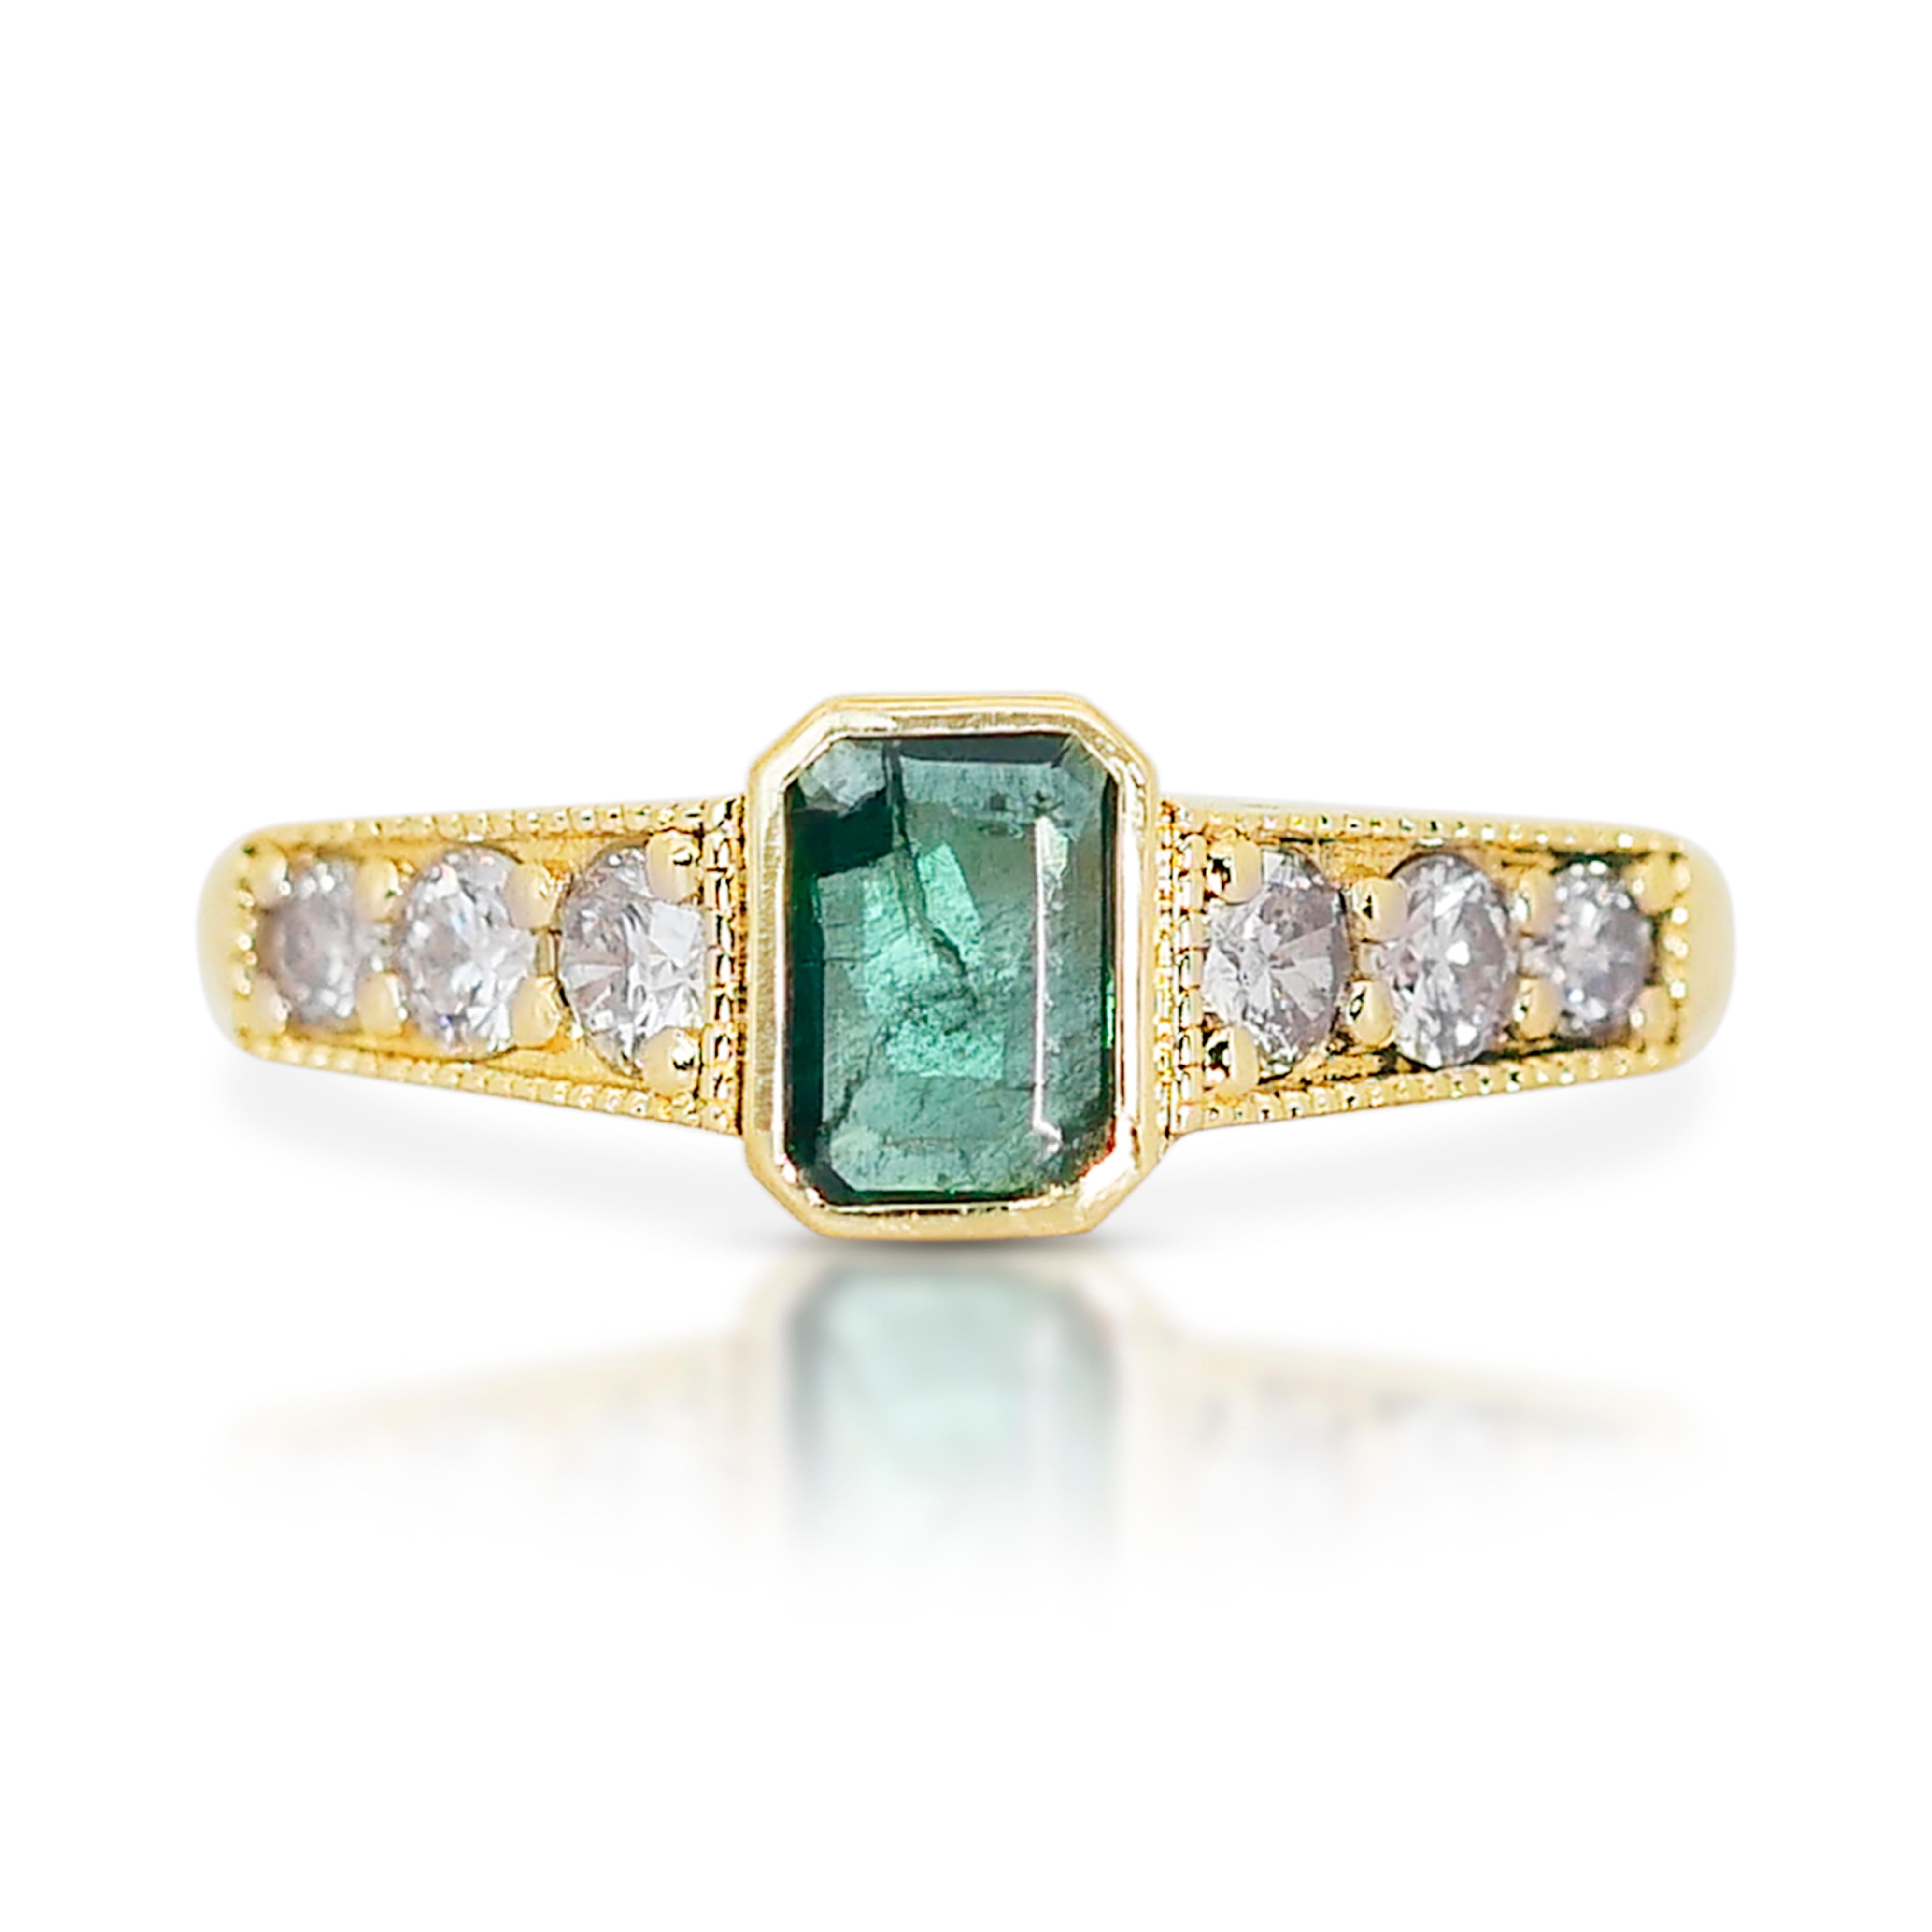 Bezaubernde 14k Gelbgold Smaragd und Diamant Pave Ring w/0,89 ct - IGI zertifiziert

Dieser bezaubernde Ring aus leuchtendem 14-karätigem Gelbgold zeichnet sich durch eine wunderschöne Kombination aus einem fesselnden Smaragd und funkelnden